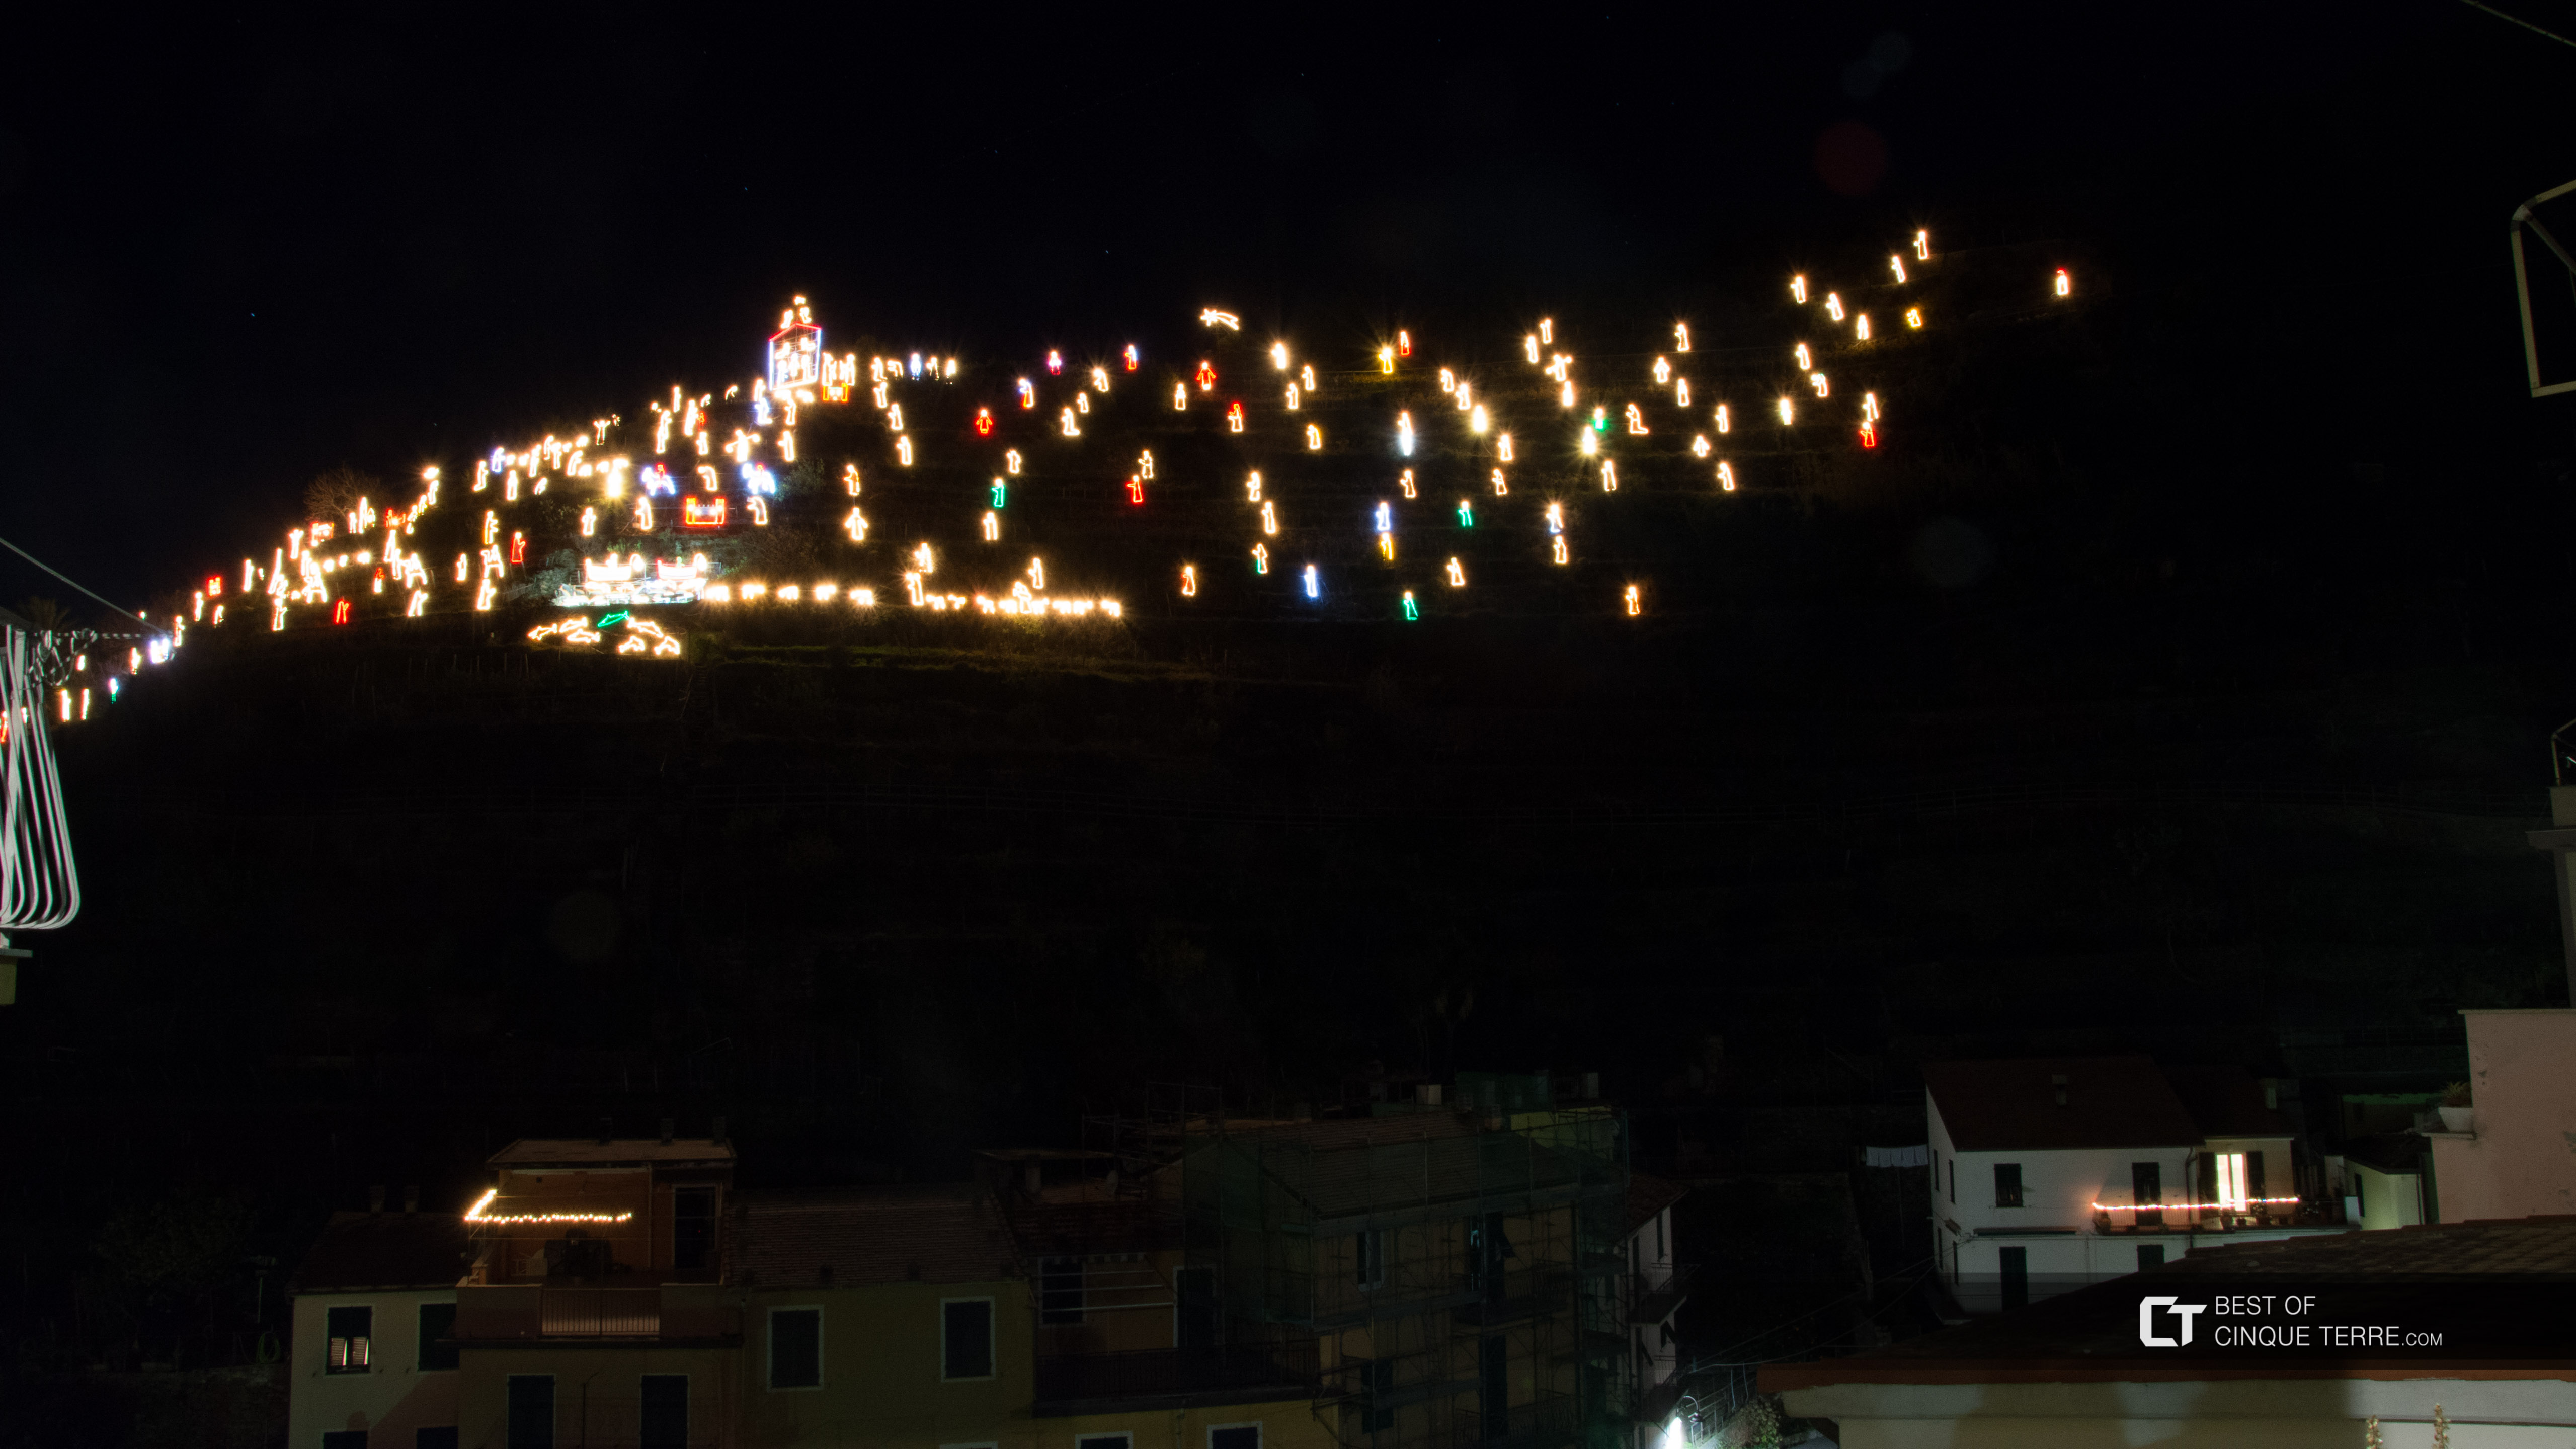 Die Weihnachtskrippe, Sicht vom Hauptplatz des Dorfes, Manarola, Cinque Terre, Italien